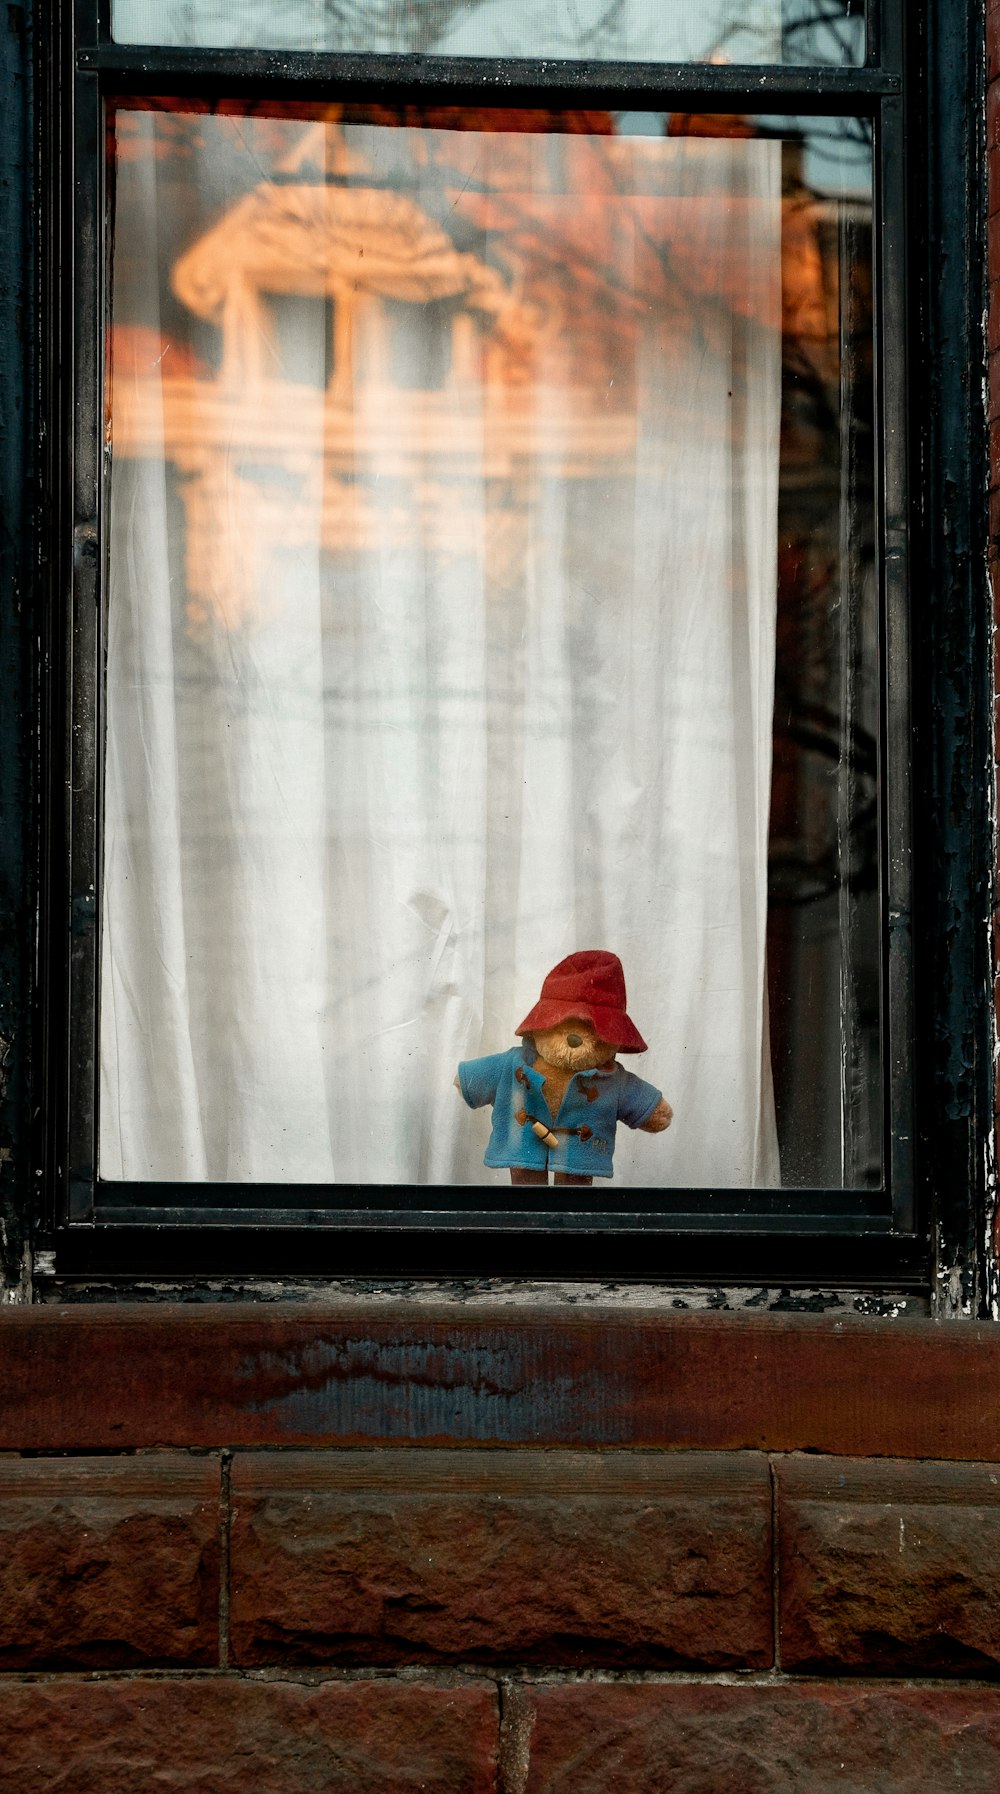 a teddy bear sits in a window